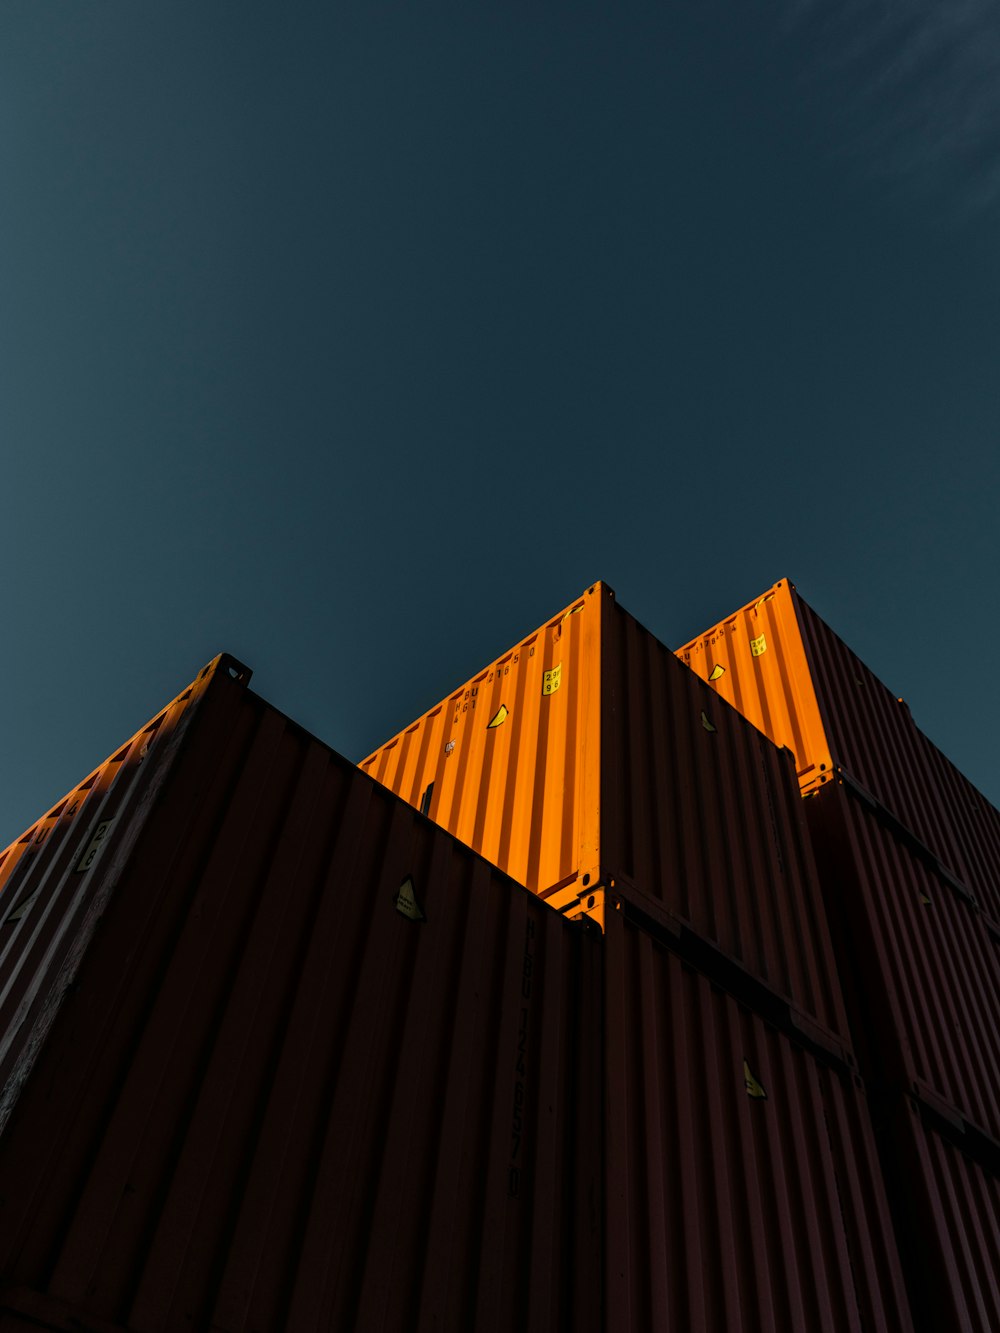 edifício laranja e preto sob o céu azul